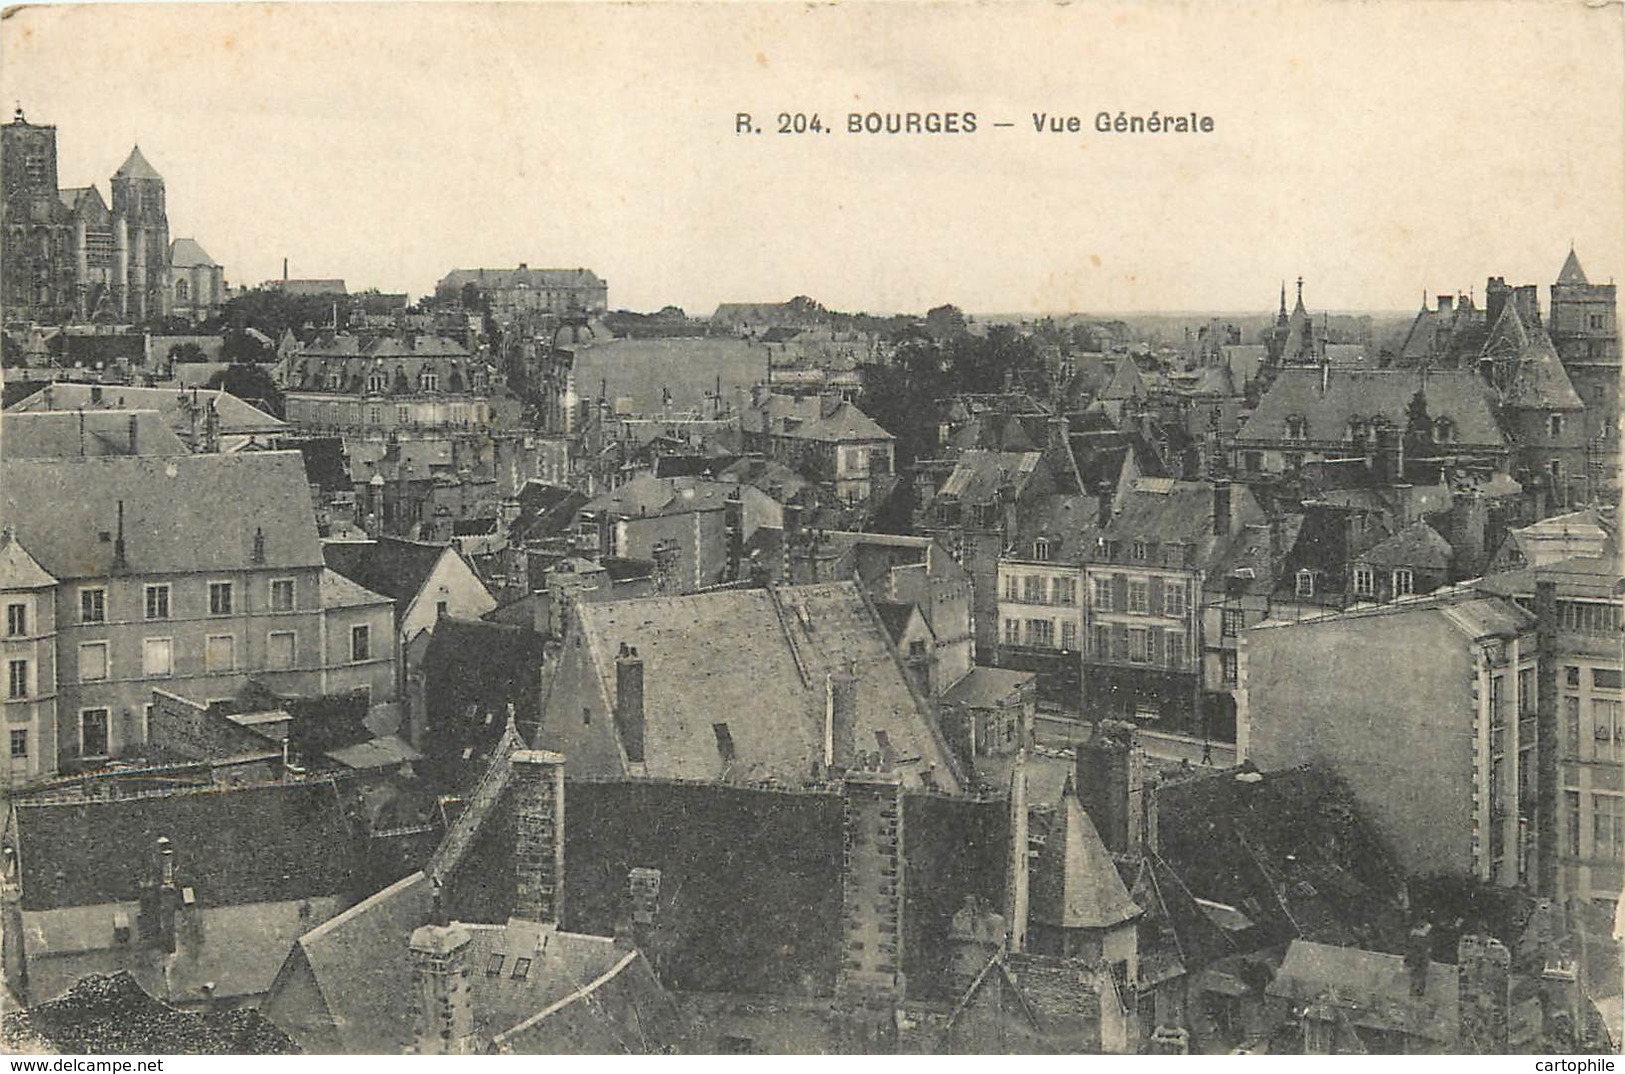 18 - LOT de 24 cpa de BOURGES écrites par le soldat Jean Sotty d'Oudry (71) de 1915 à 1918 en garnison au 1er RA